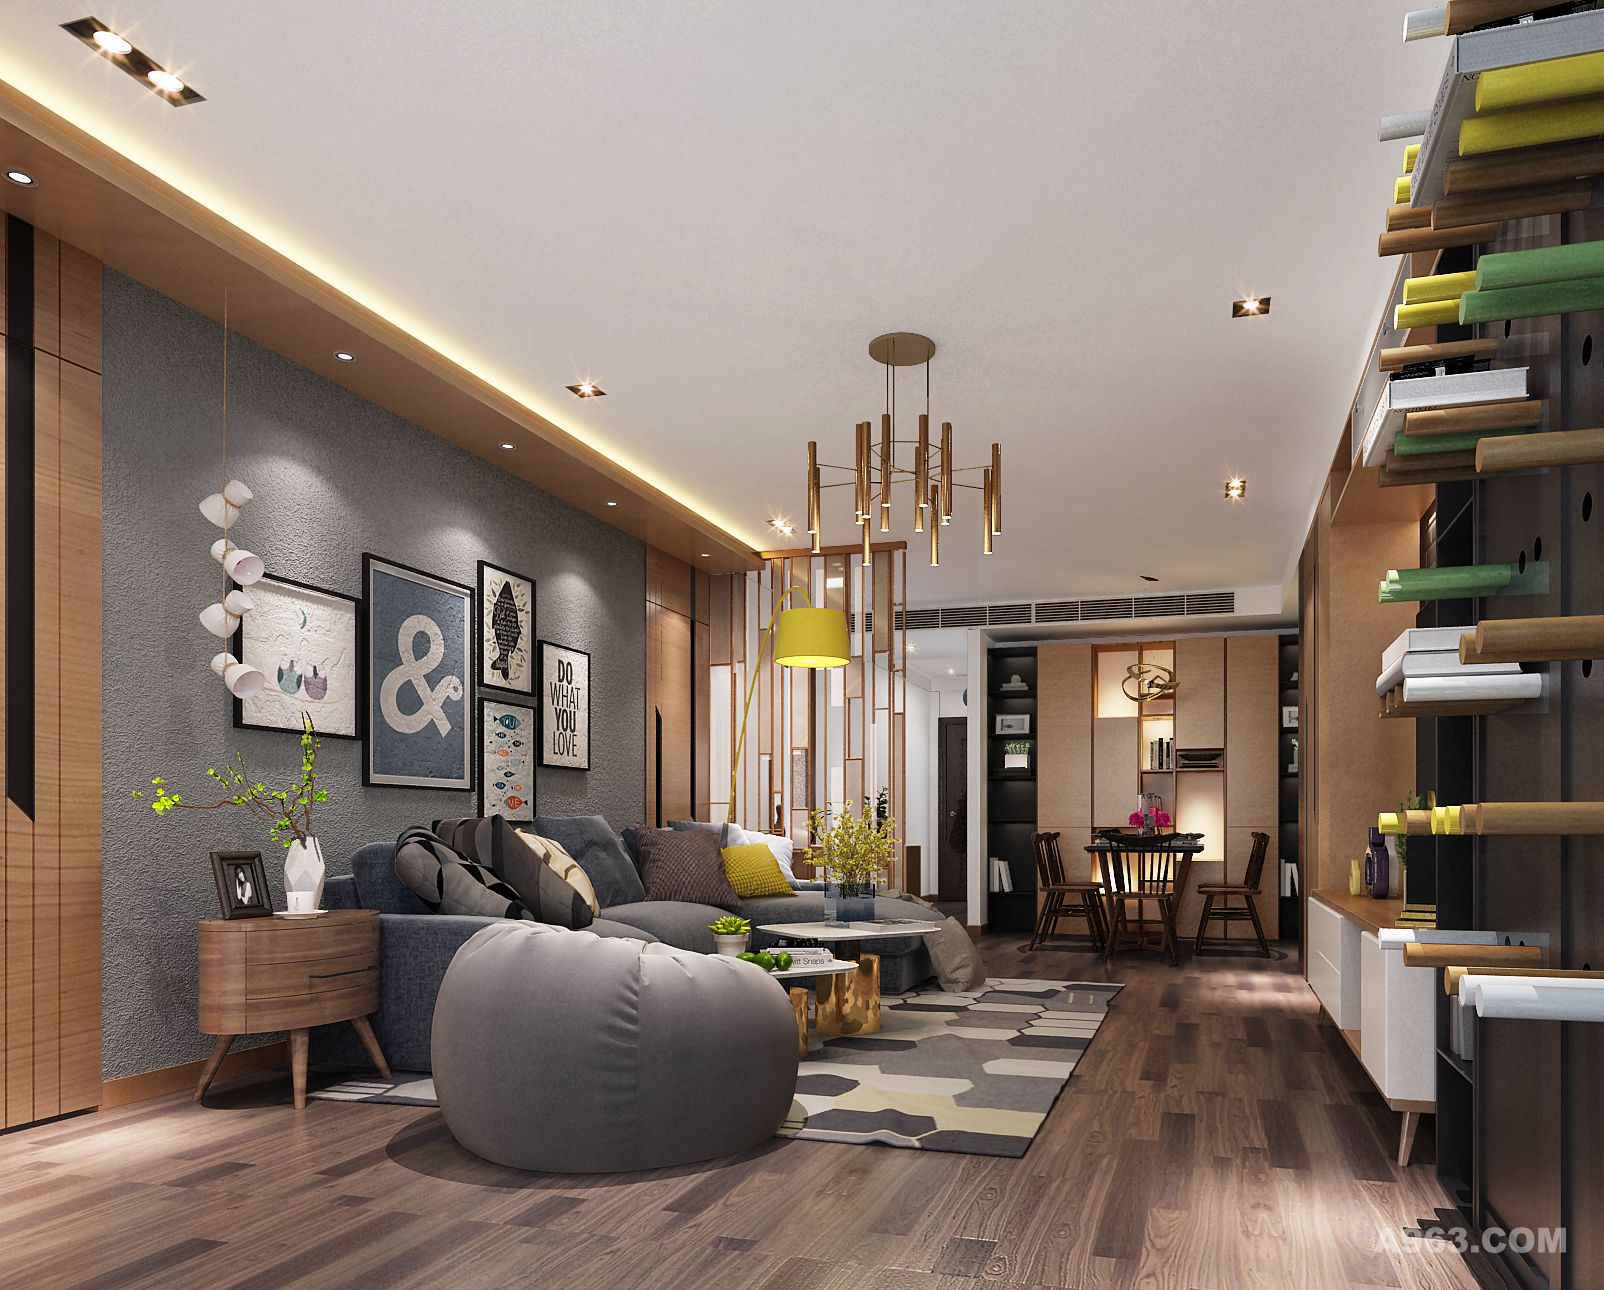 客厅空间运用灰白木三色，体现整体空间的风格，北欧与现代的结合，满足客户的需求。